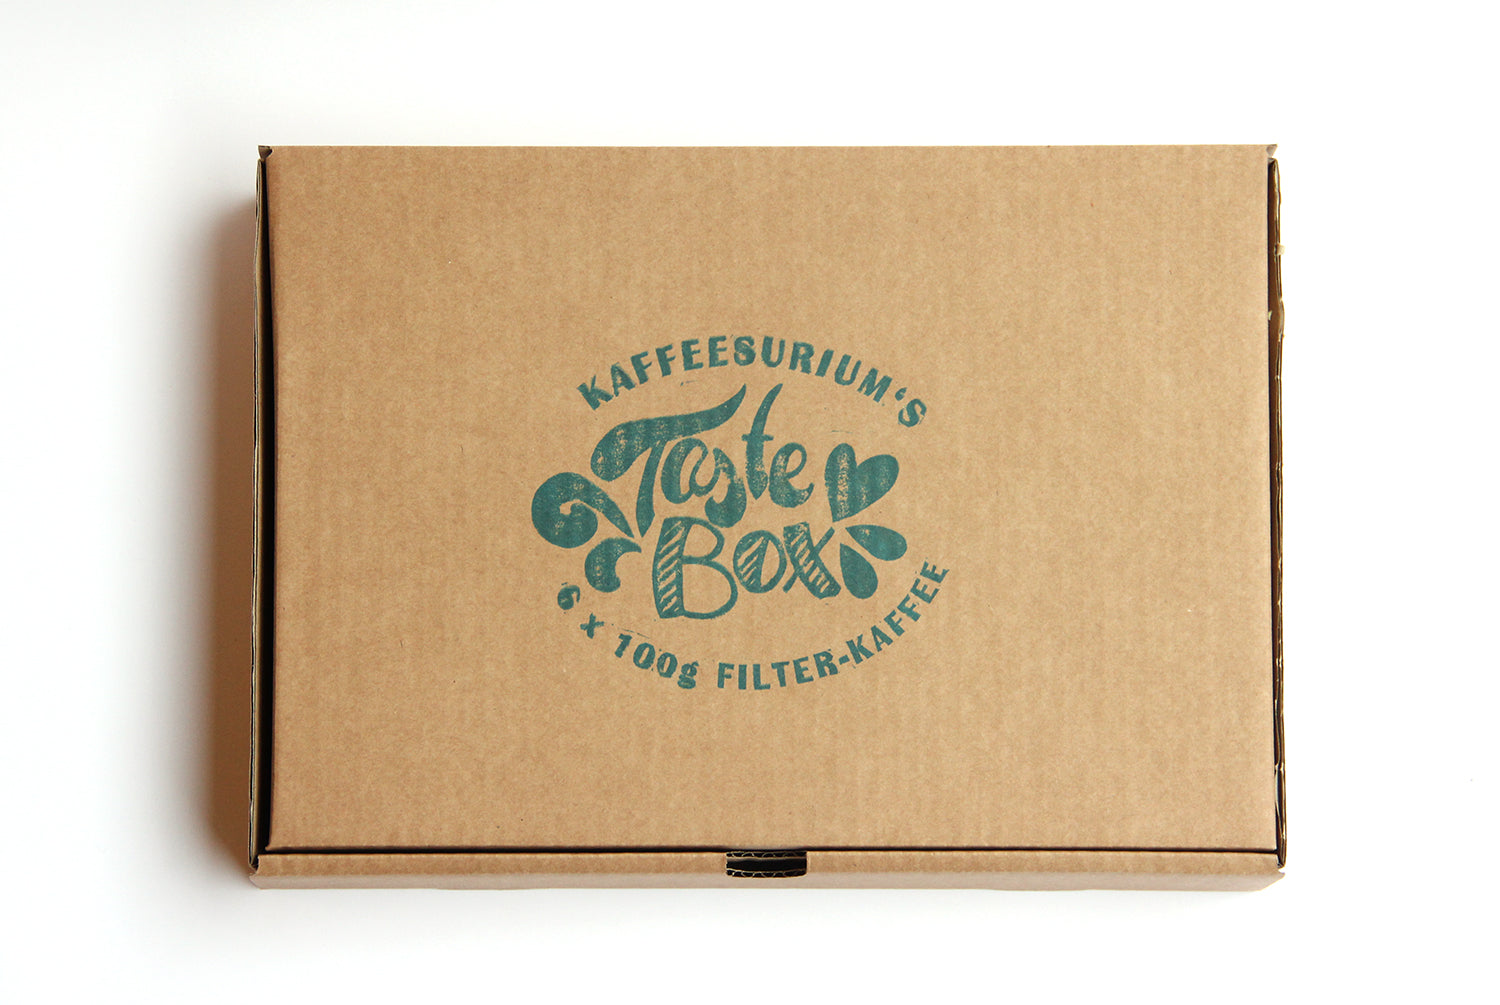 Kaffeesurium's Taste Box "Filter-Kaffee"